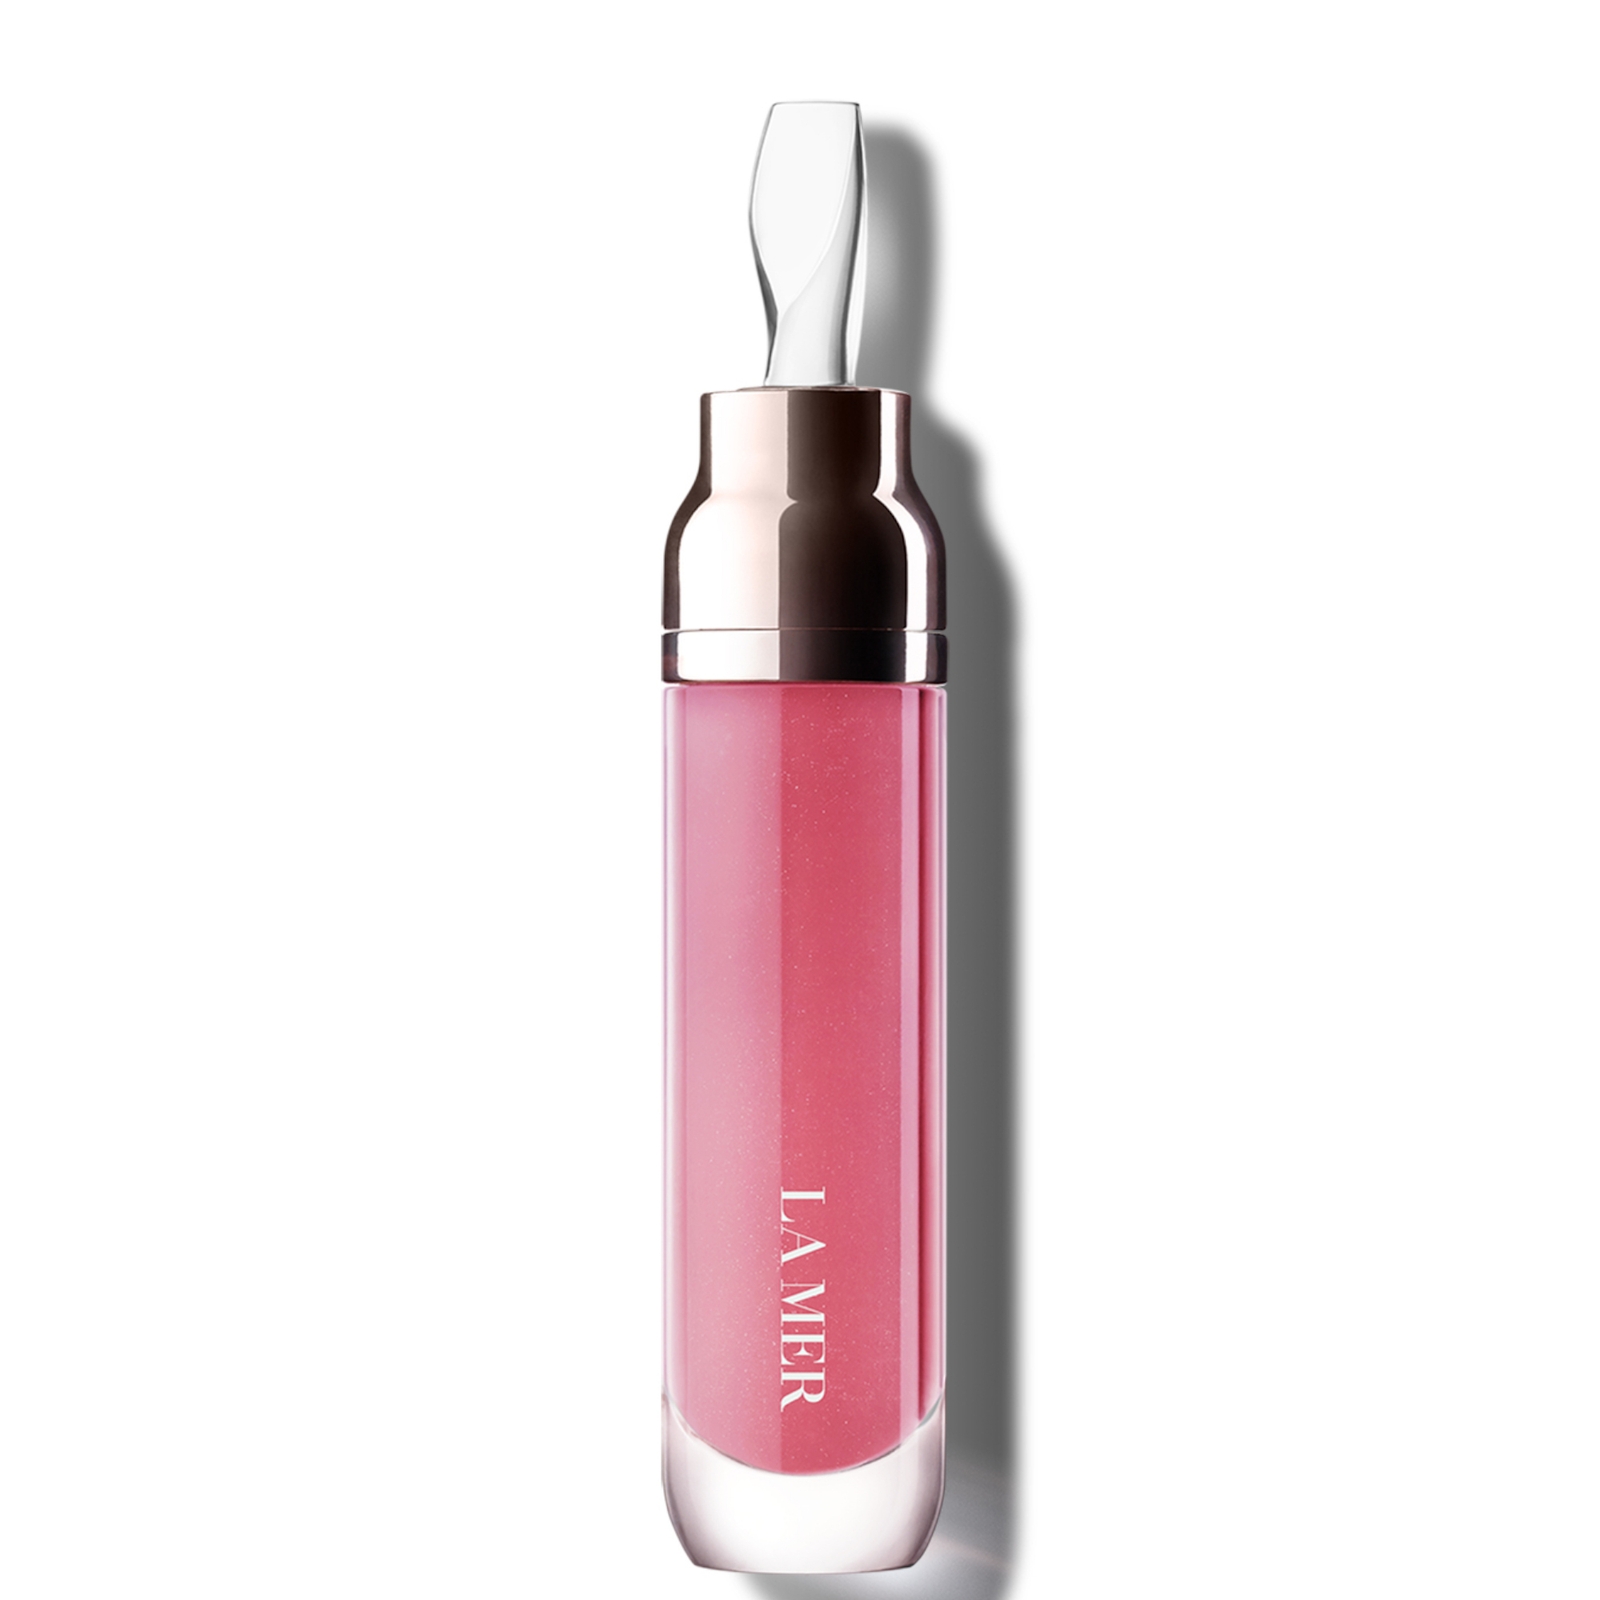 Photos - Lipstick & Lip Gloss La Mer The Lip Volumizer Gloss 7ml  - Sheer Pink (Various Shades)